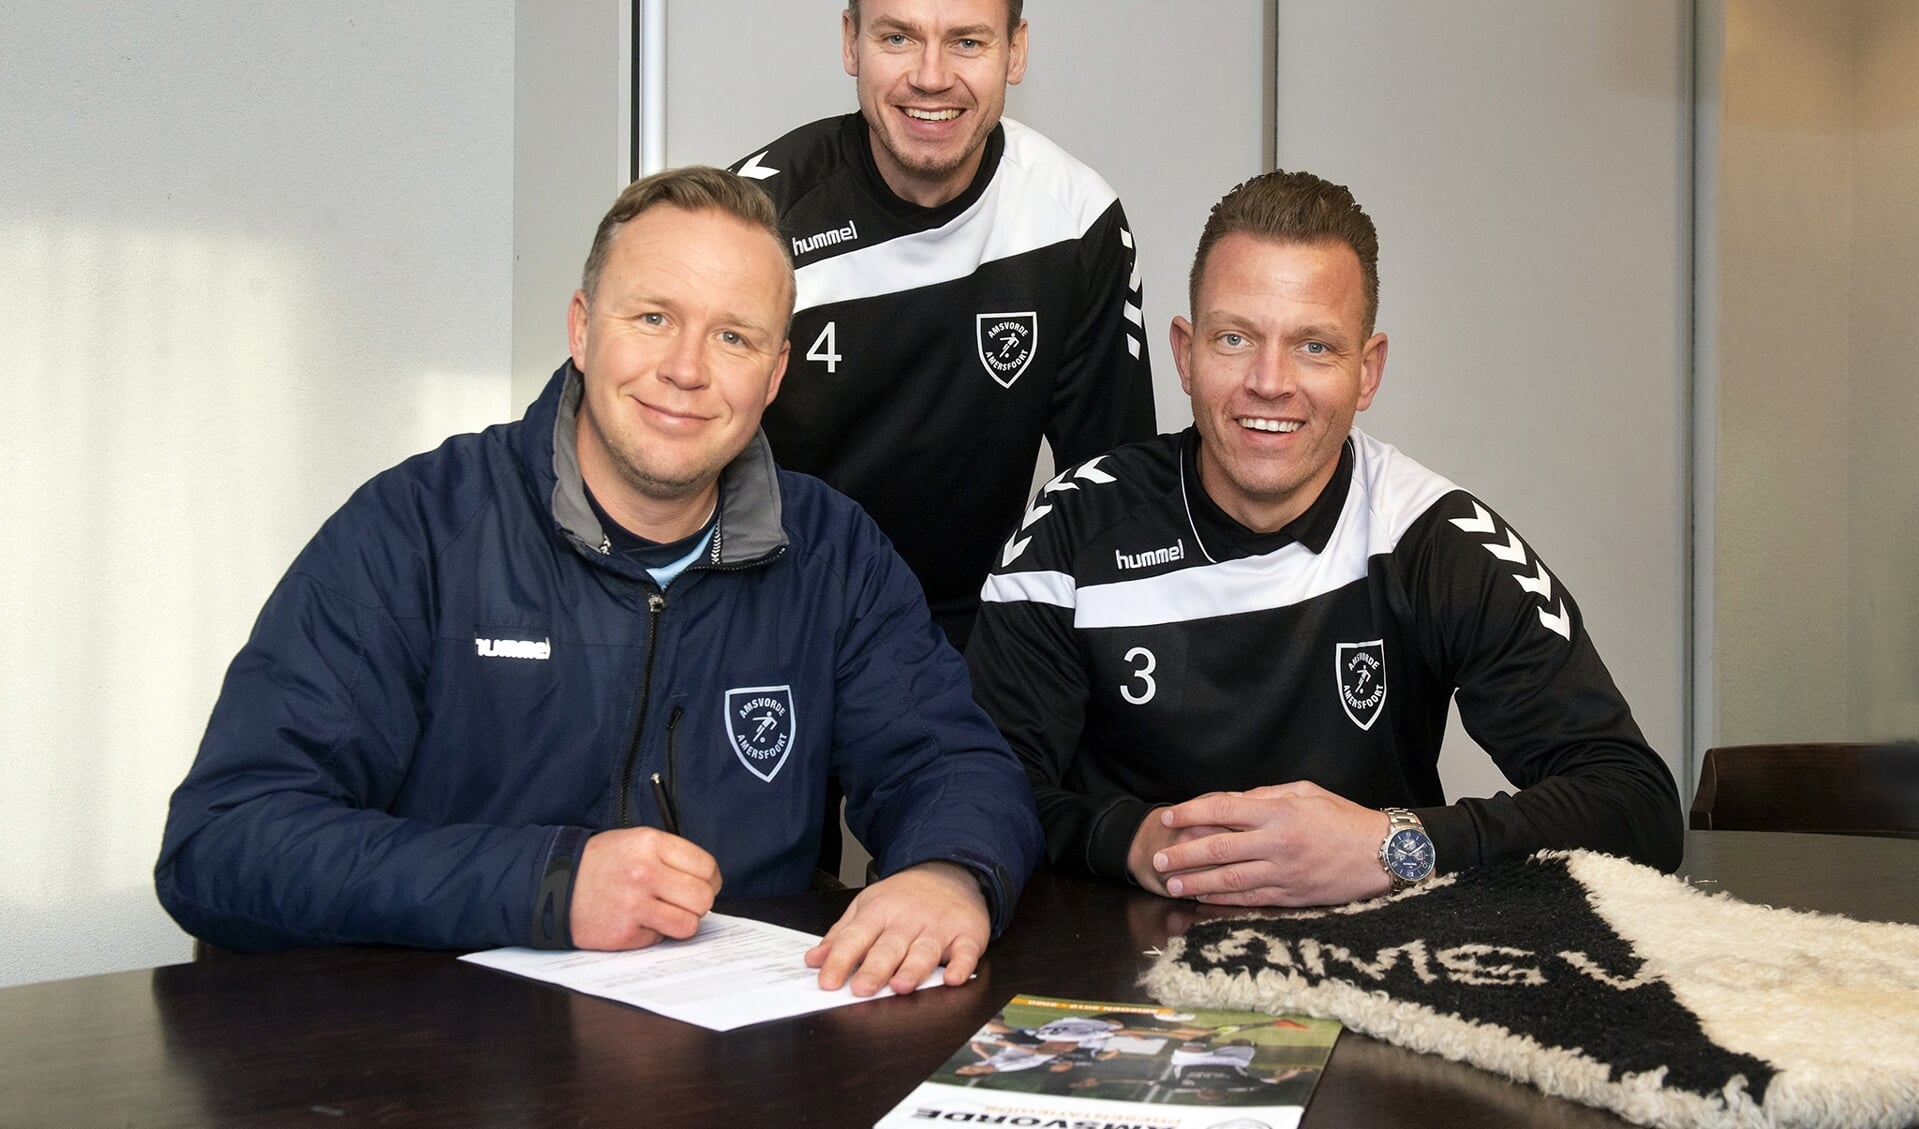 Hoofdtrainer Rik Klement (links) heeft zijn contract met nog een jaar verlengd. Danny de Graaf (rechts) en Jeffrey van de Wijngaard (midden) gaan het bestuur in.